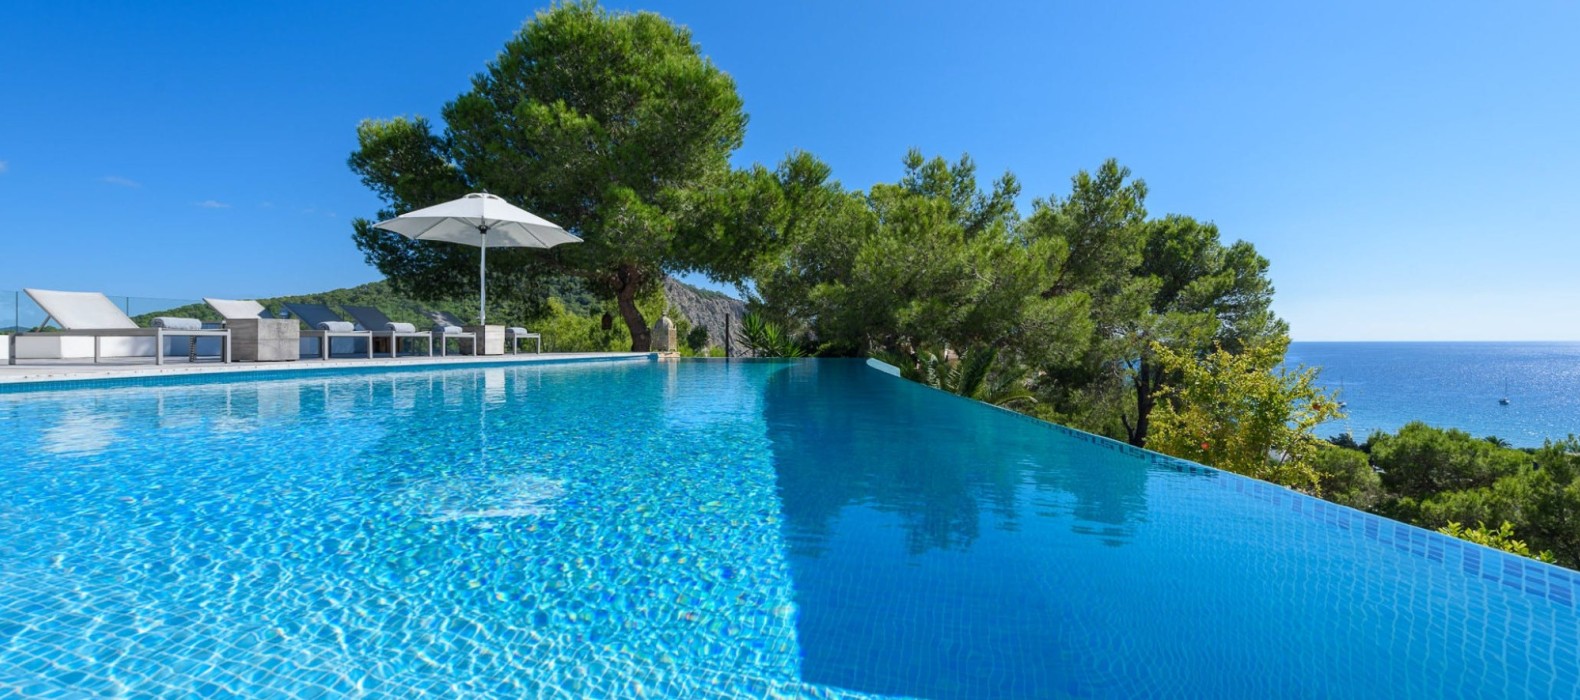 Exterior pool view of Villa Blue Dreams in Ibiza